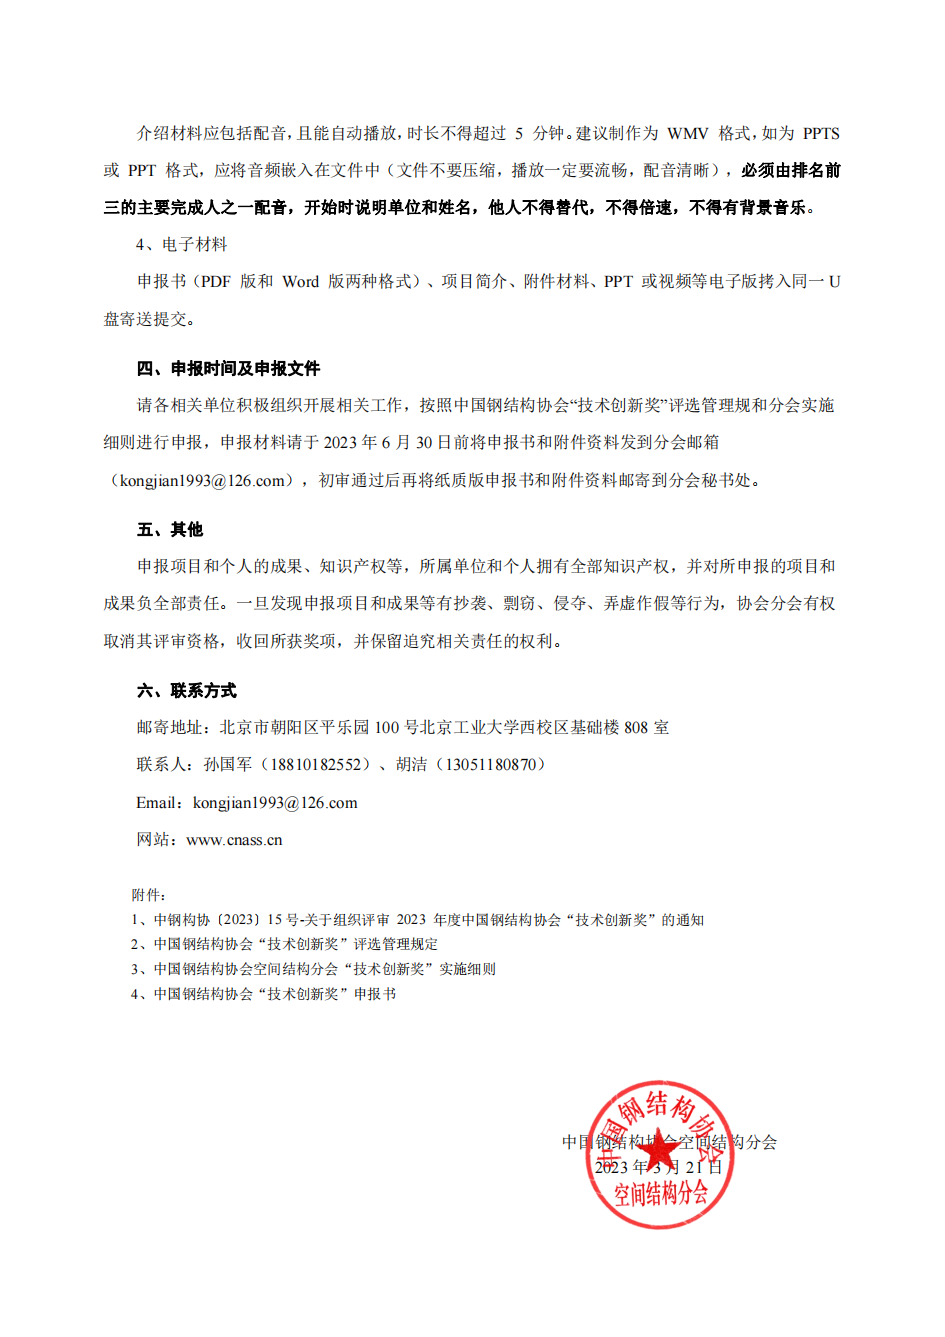 中钢构协（空间函）[2023] 第（4）号 -关于申报2023年度中国钢结构协会“技术创新奖”的通知_01.png